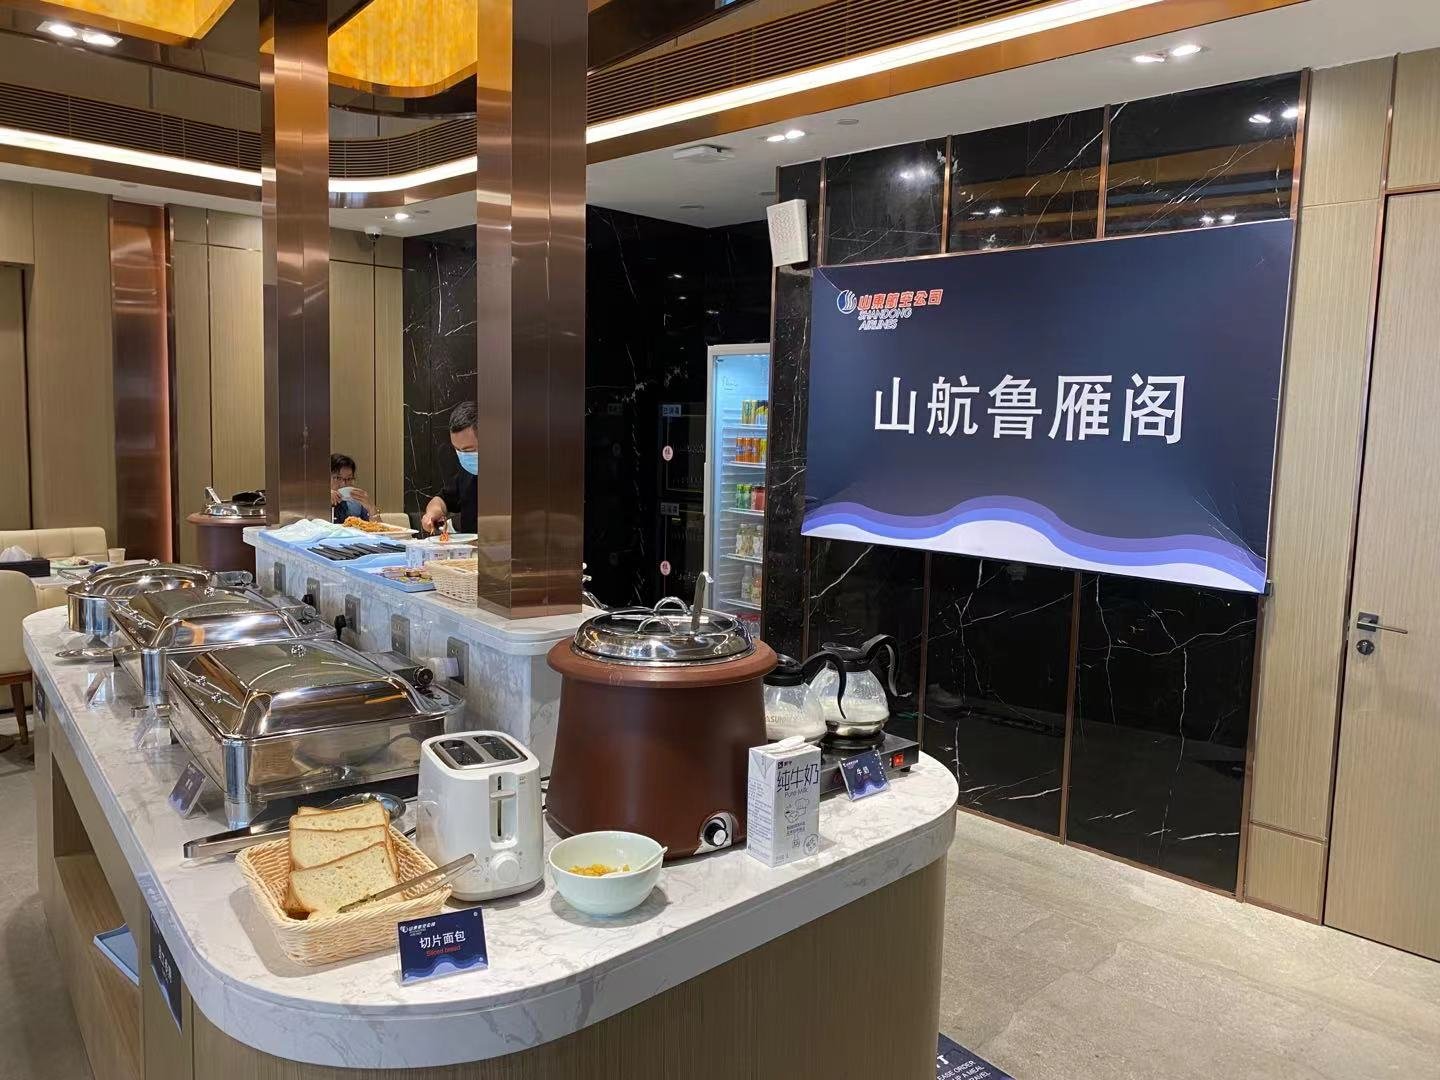 扬州空港宾馆推出自助早餐服务-扬州泰州国际机场